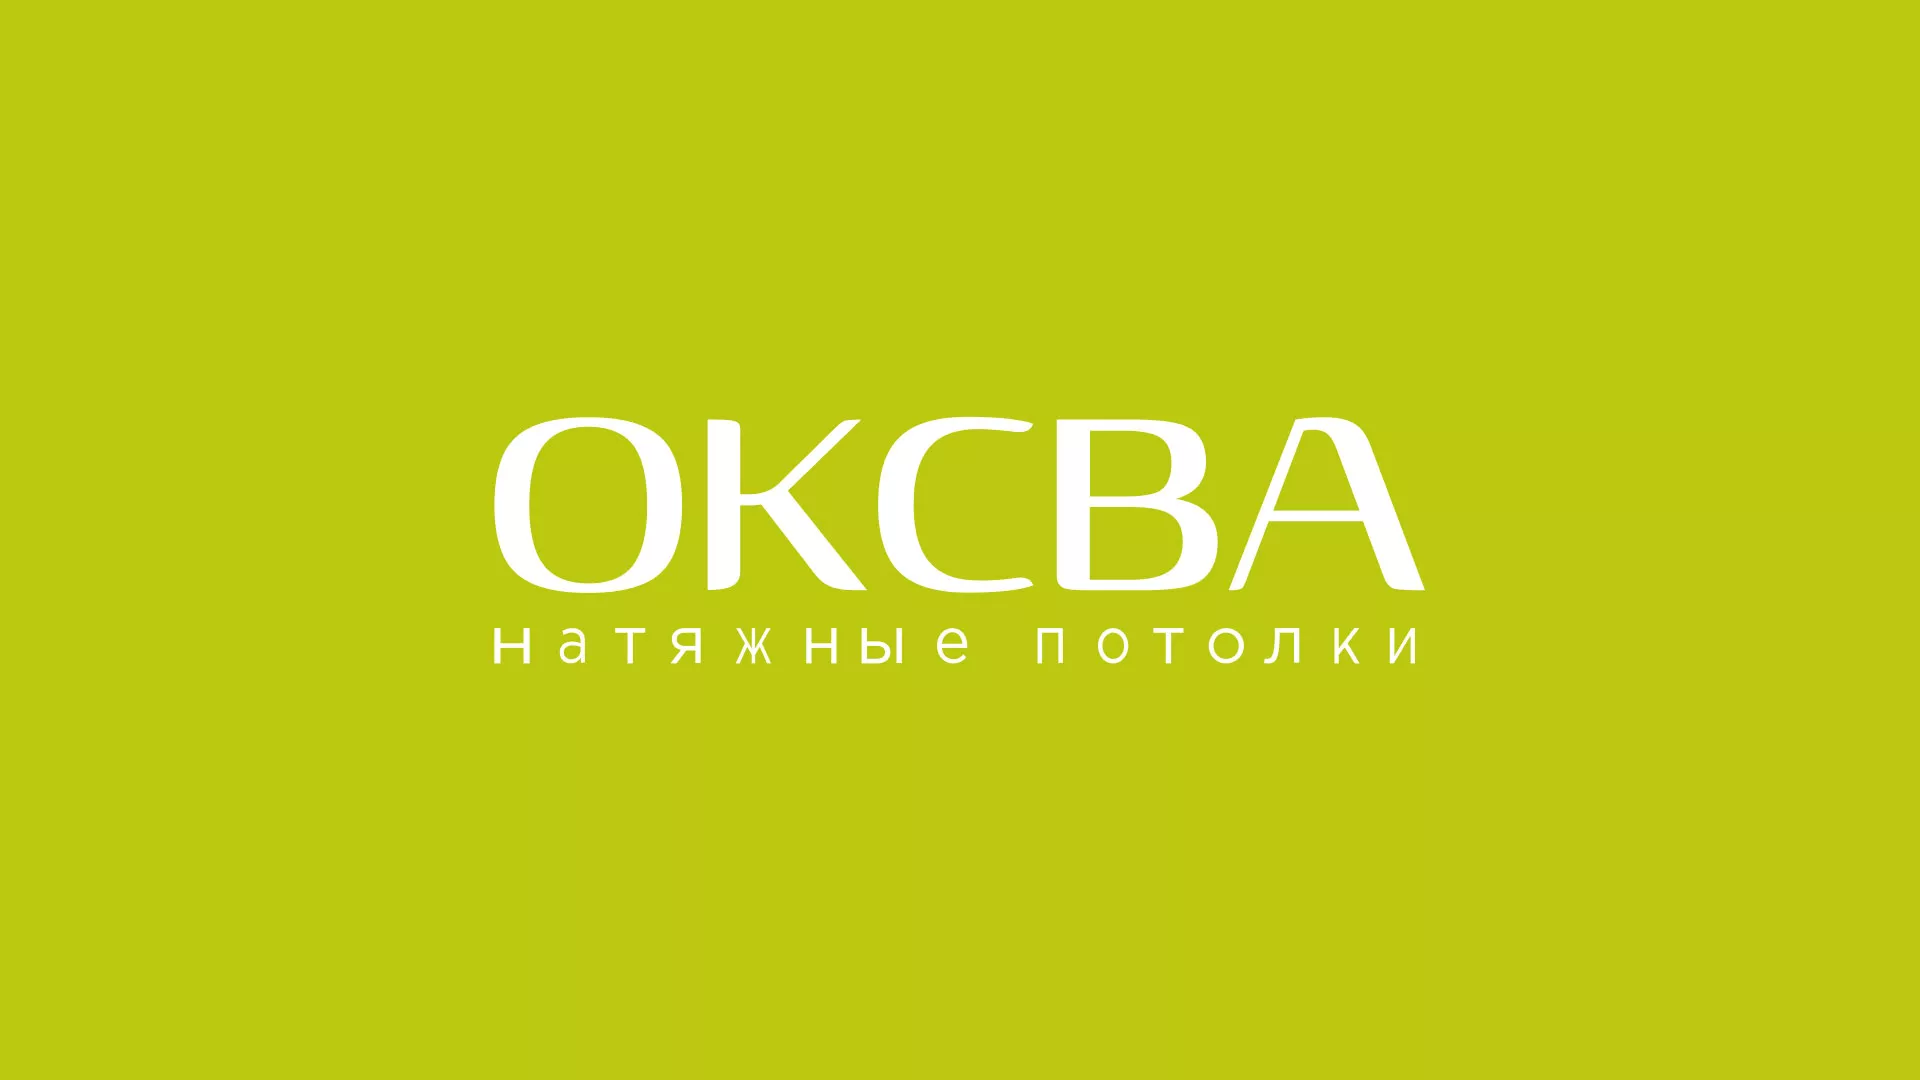 Создание сайта по продаже натяжных потолков для компании «ОКСВА» в Усть-Джегуте